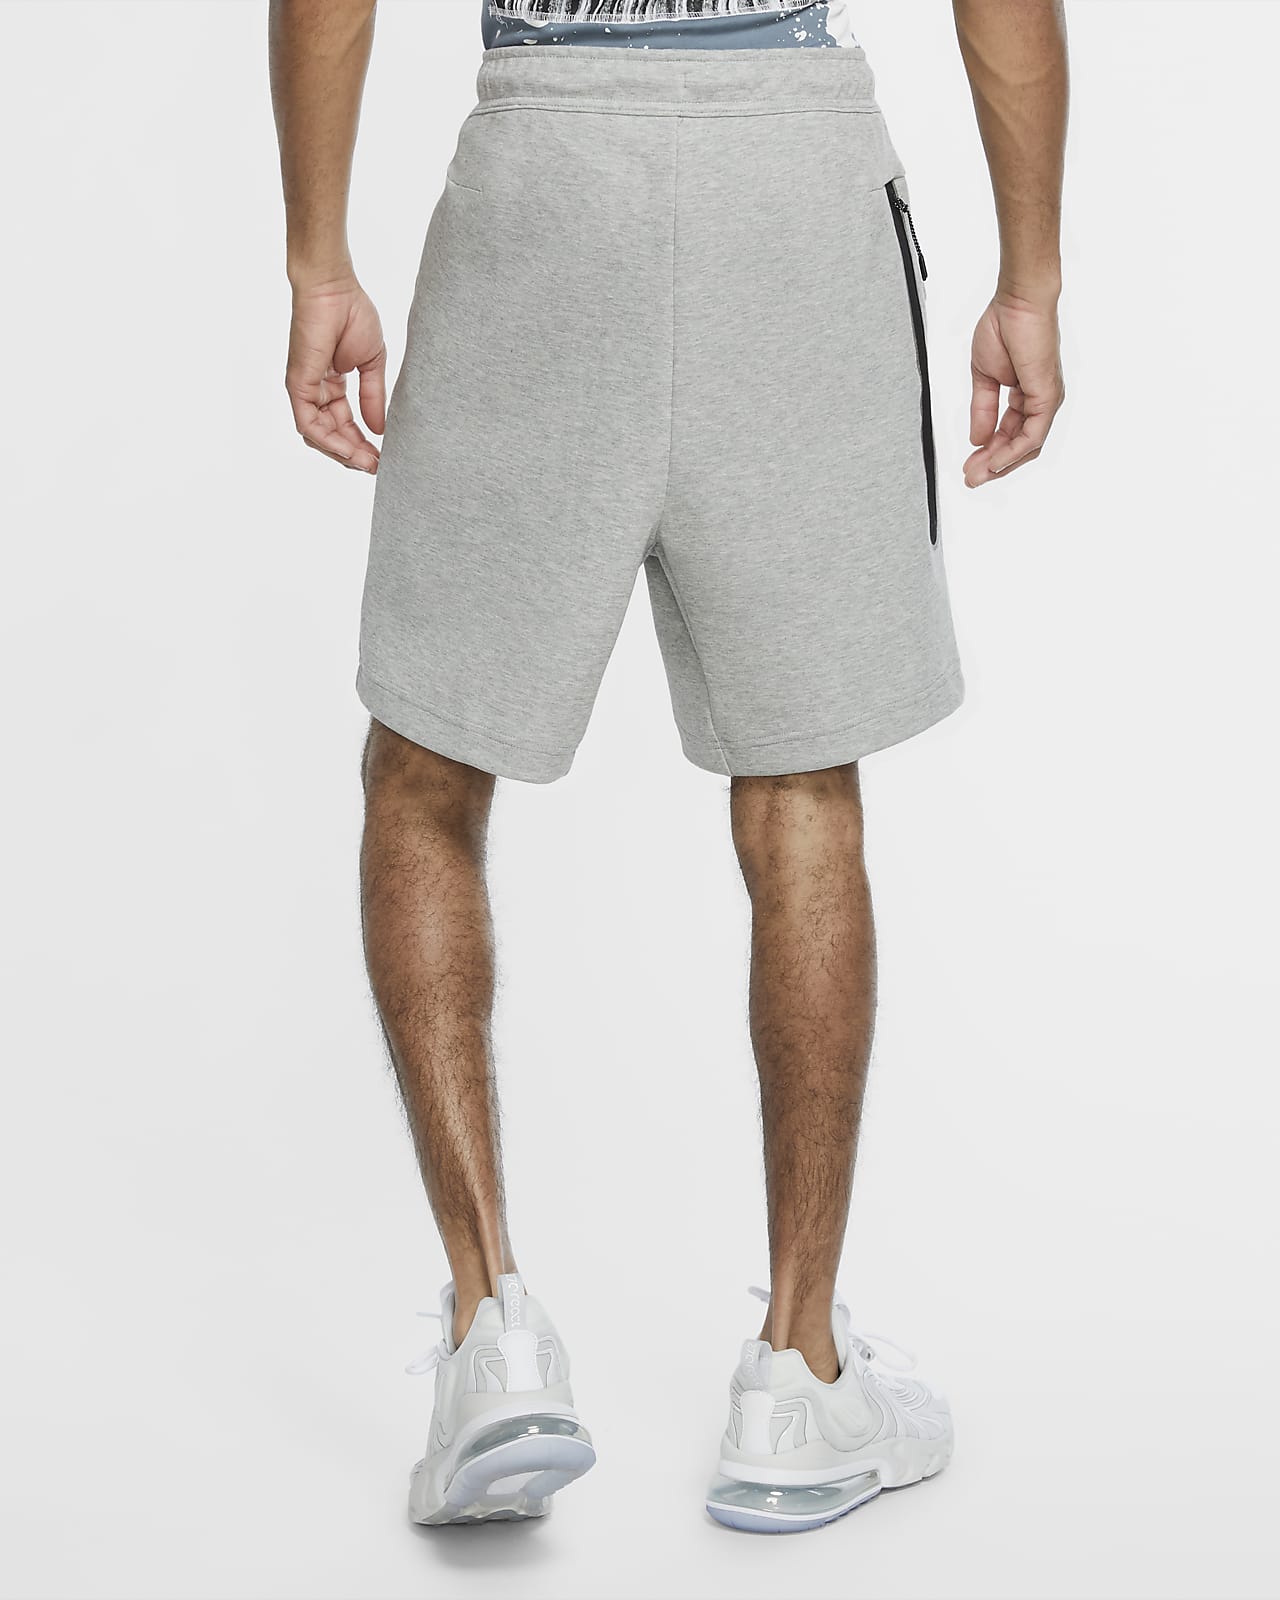 Nike Sportswear Tech Fleece Shorts - Mens